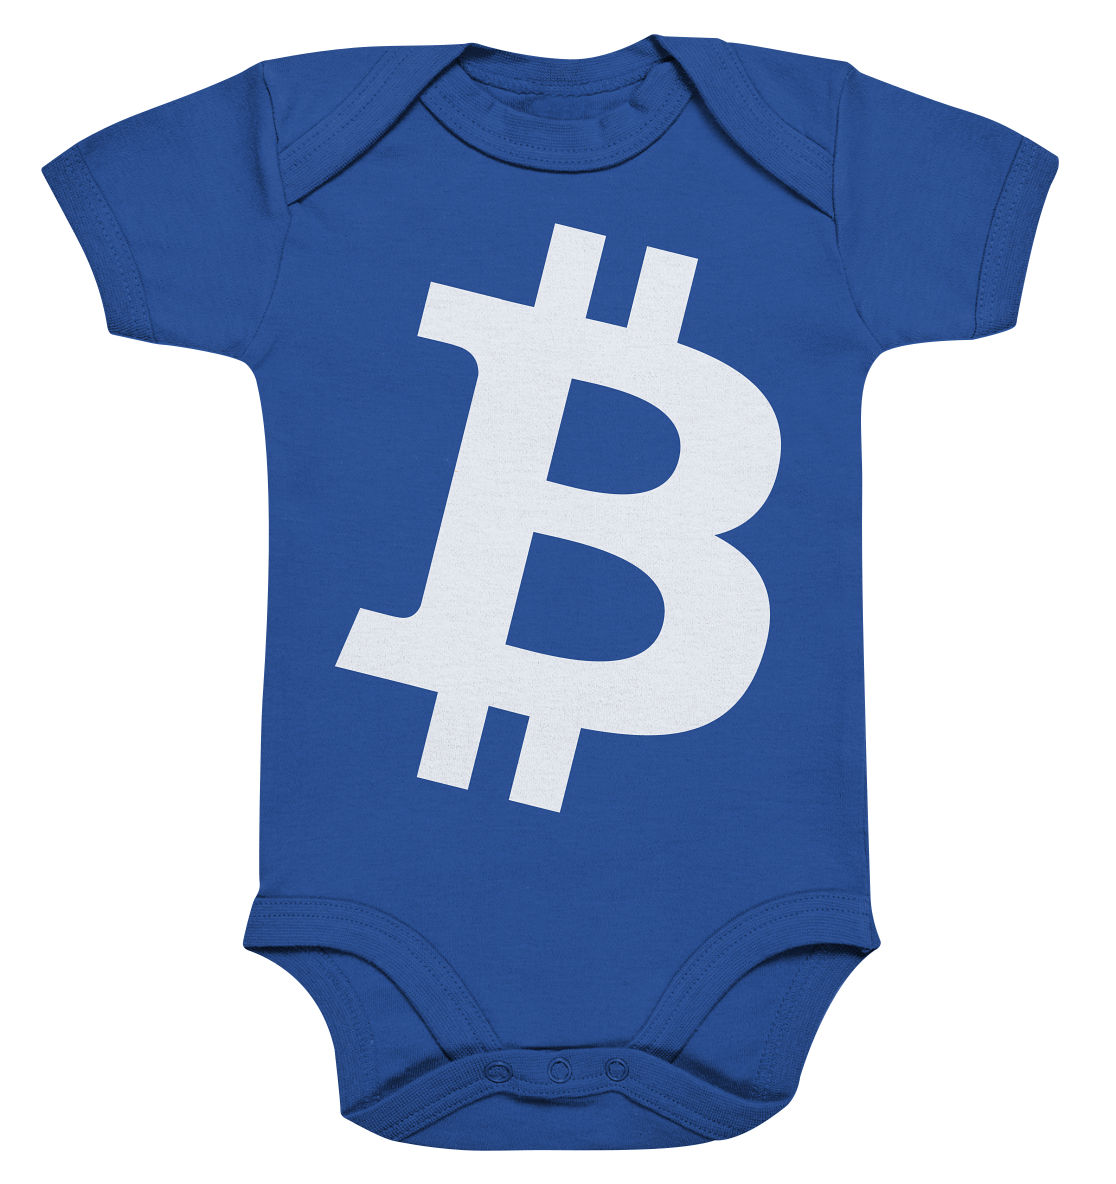 Bitcoin "simple B white" - Organic Baby Bodysuite